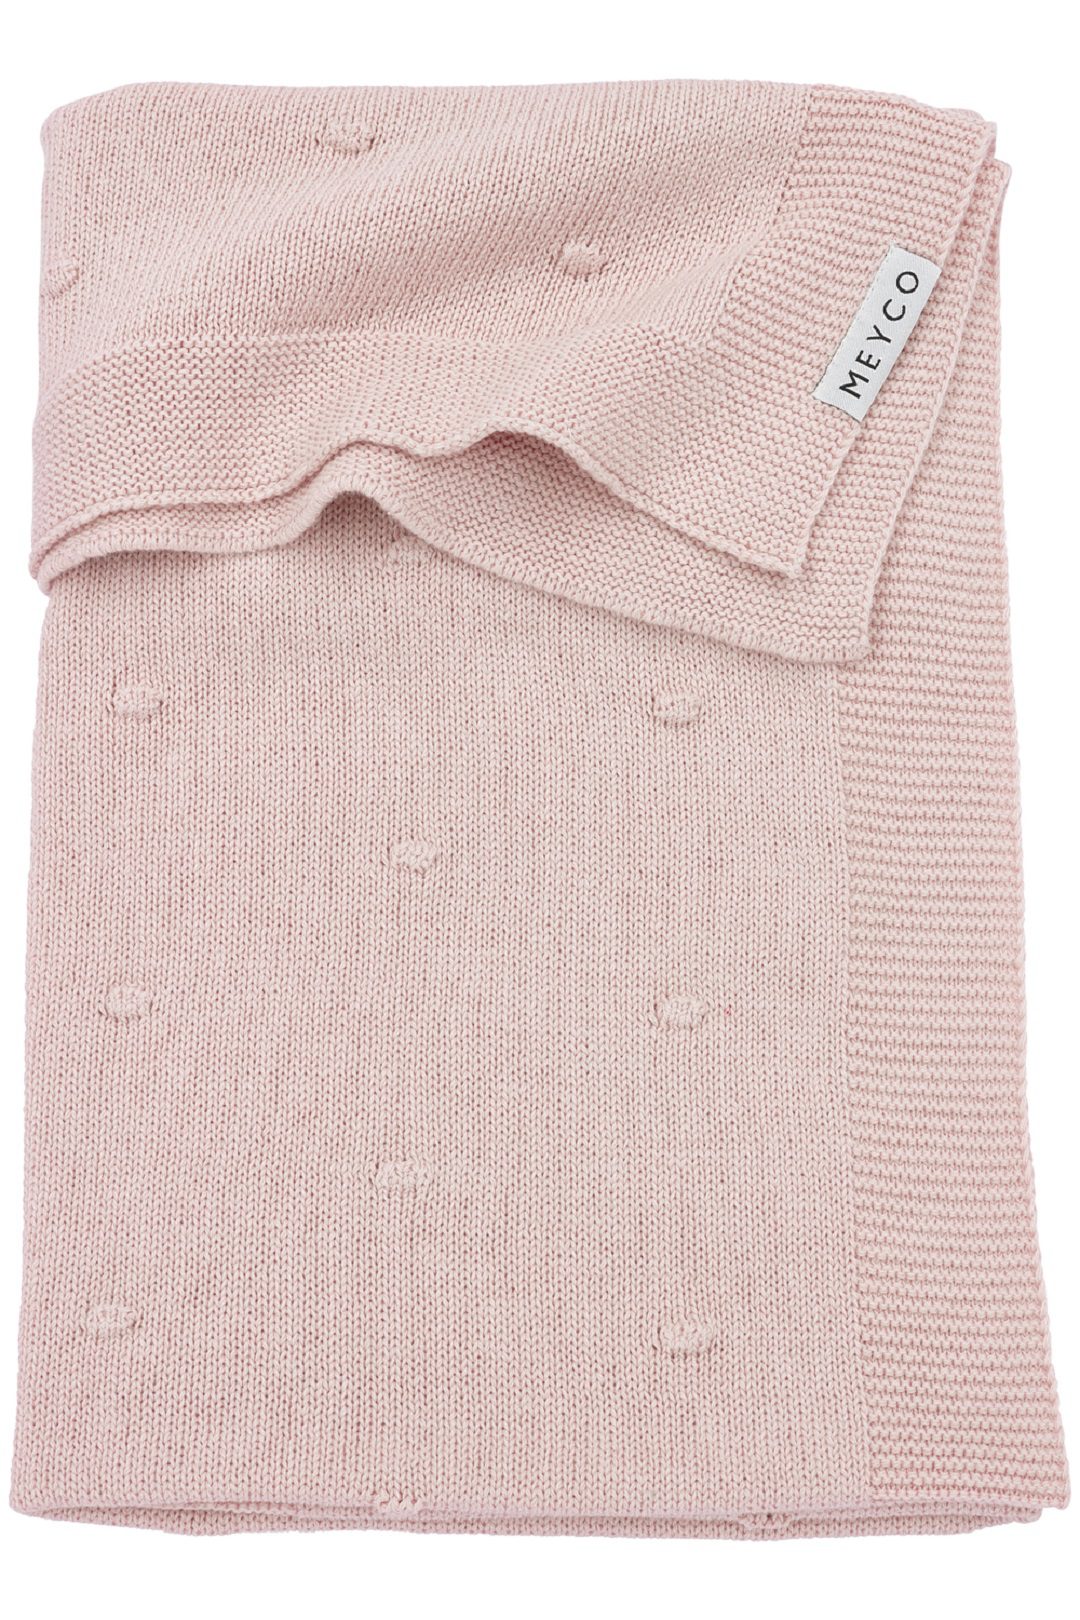 Meyco Mini Knots wiegdeken - soft pink - 75x100cm